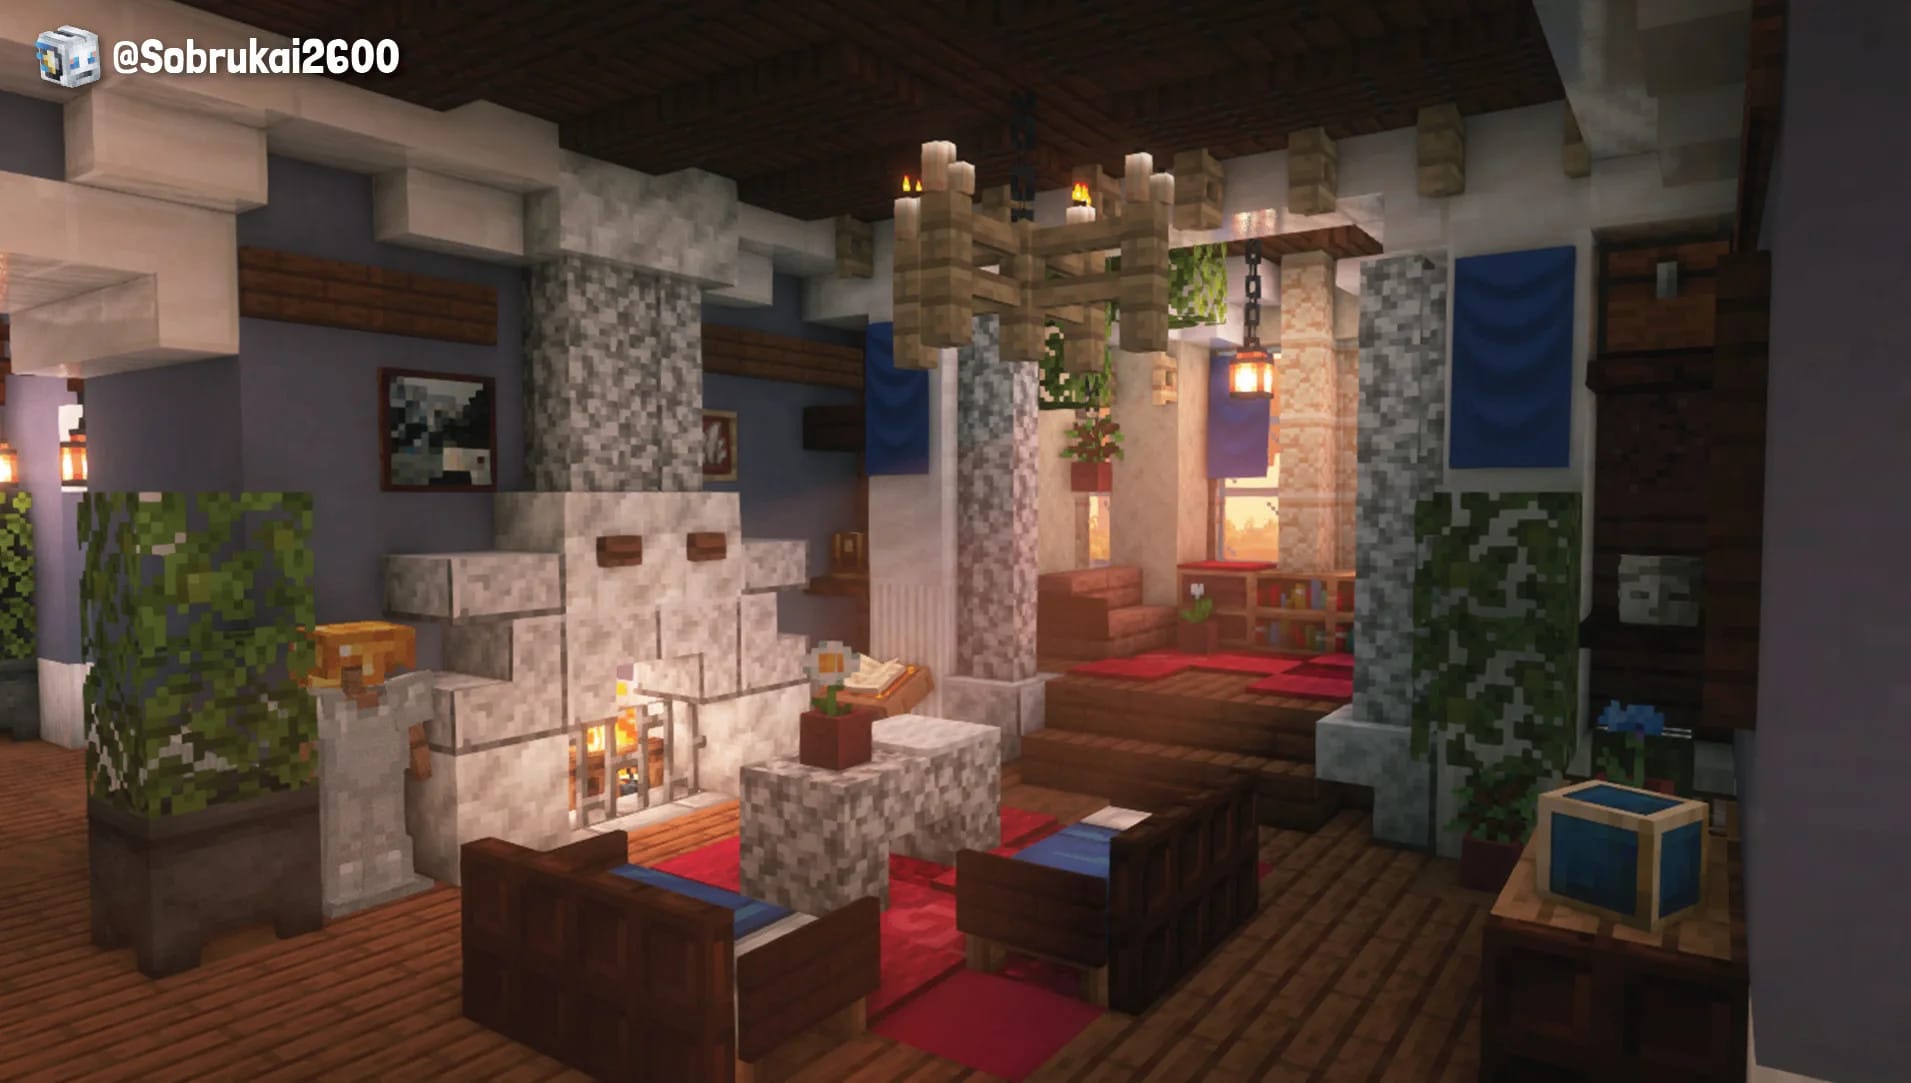 Astuce] Des idées de décorations pour vos intérieurs - Minecraft